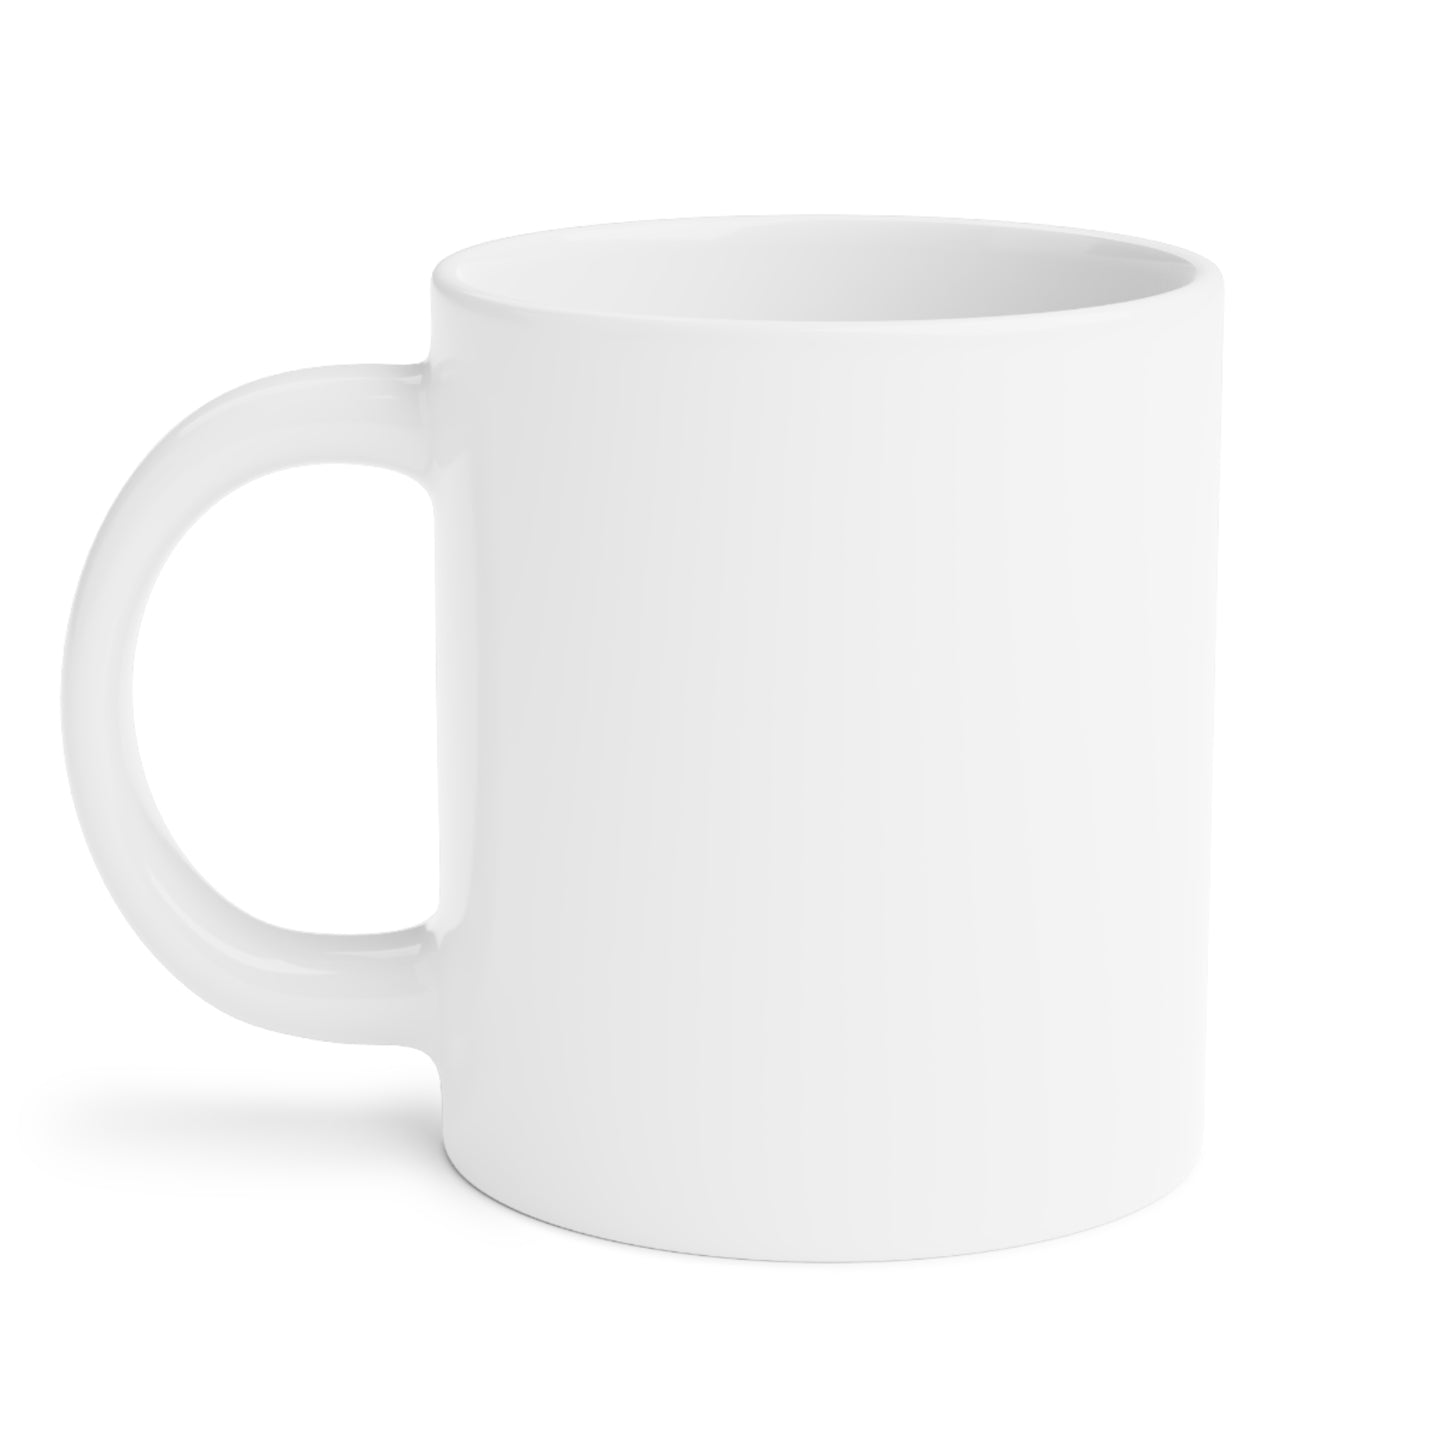 4DavidBlue - Ceramic Mugs (11oz\15oz\20oz)